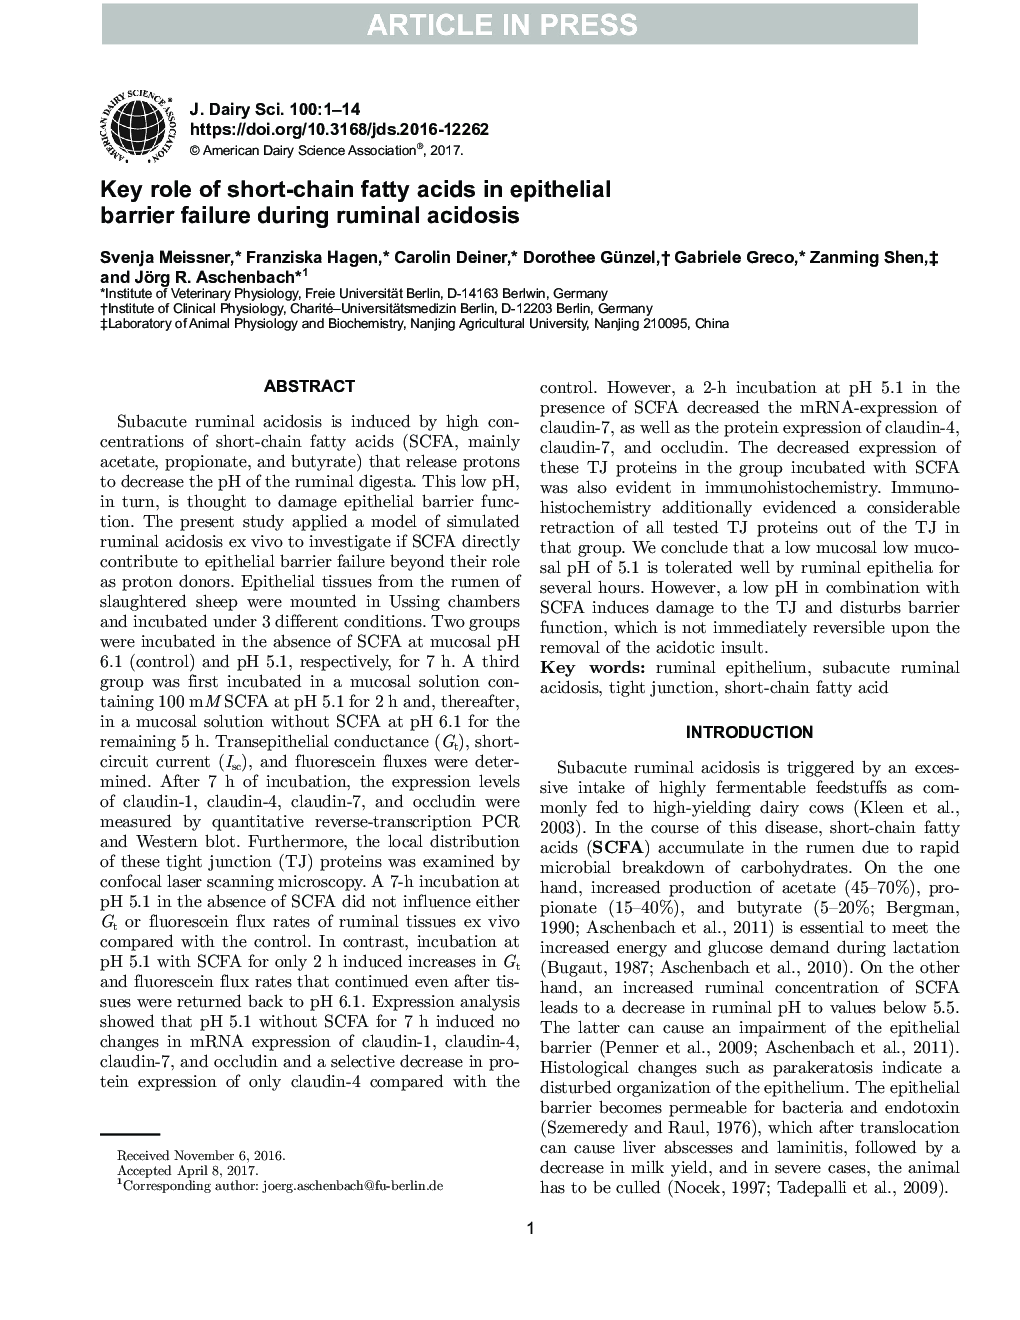 نقش کلیدی اسیدهای چرب کوتاه مدت در شکستگی حشره اپی تلیال در طی اسیدوز شکمی 